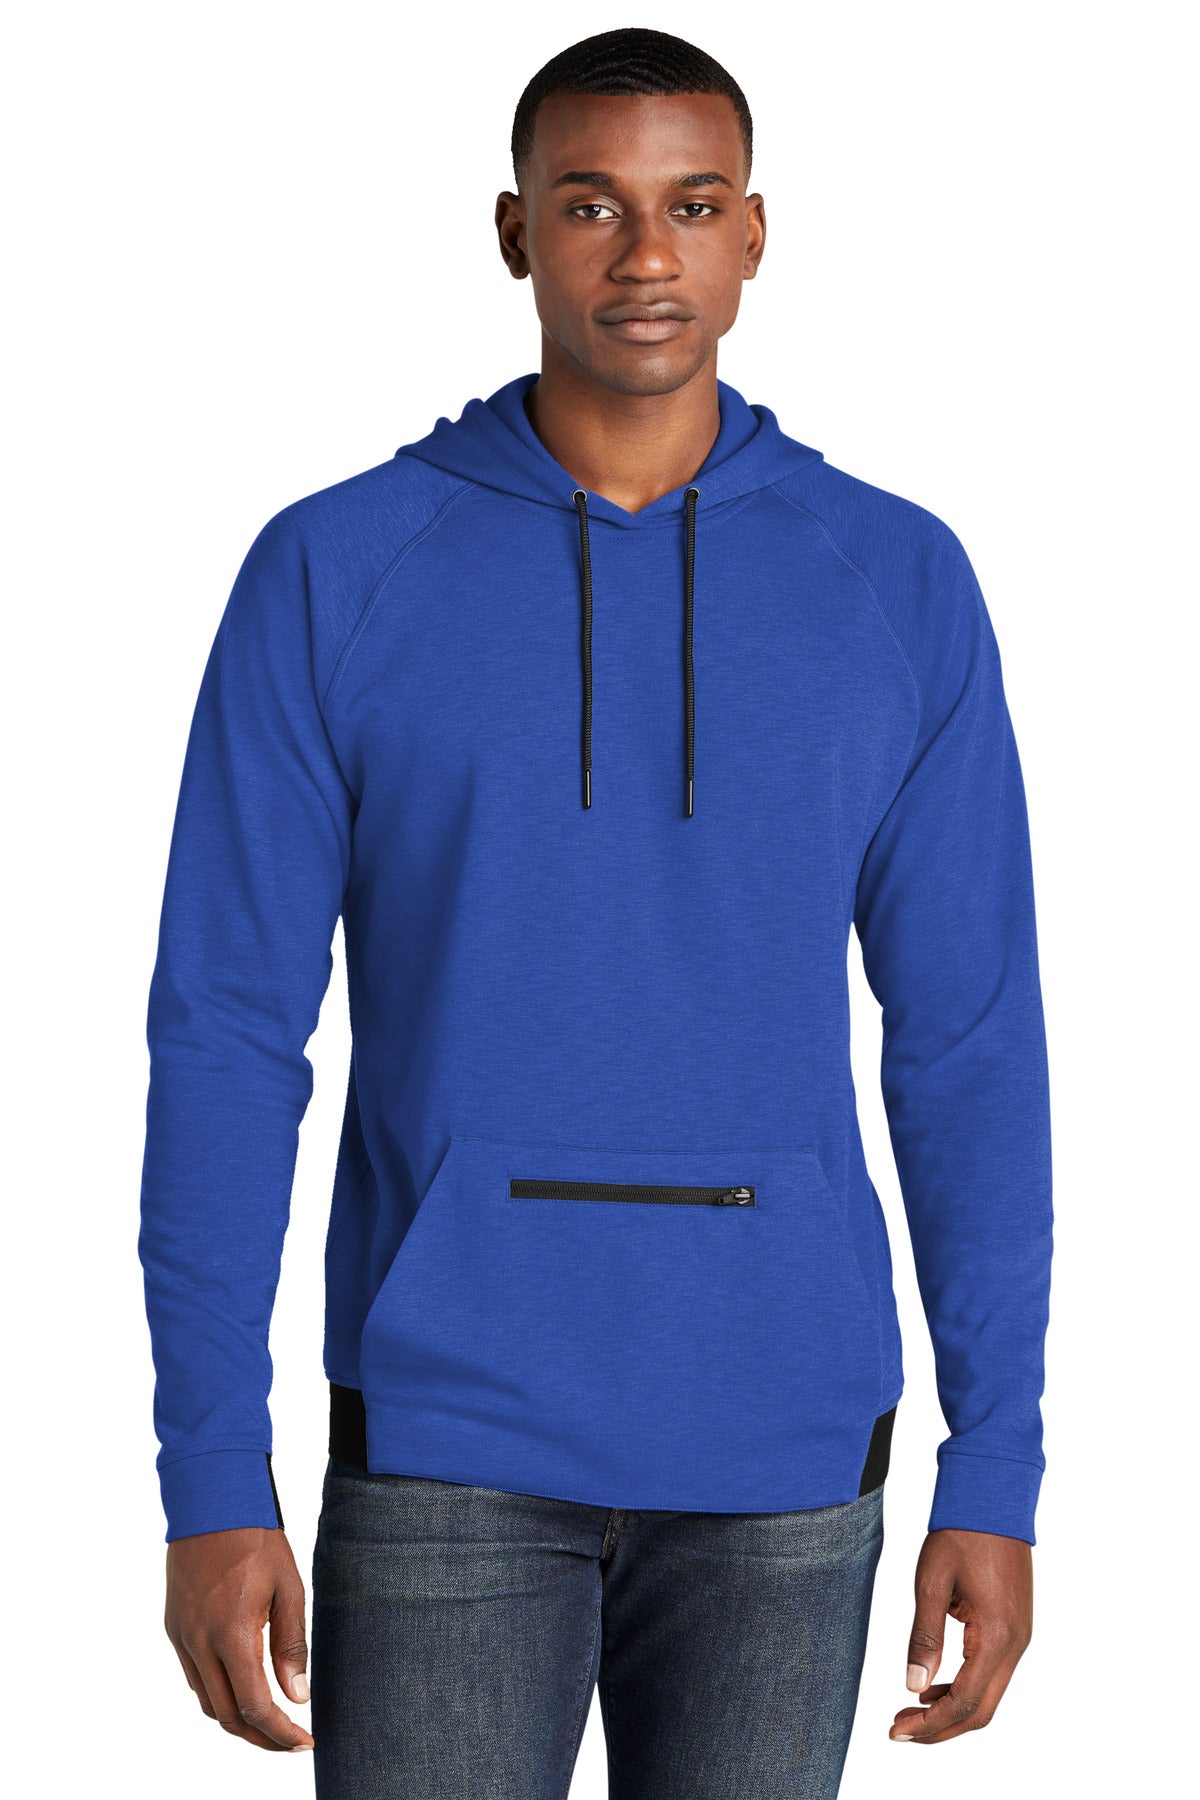 Sweatshirts/Fleece True Royal Sport-Tek